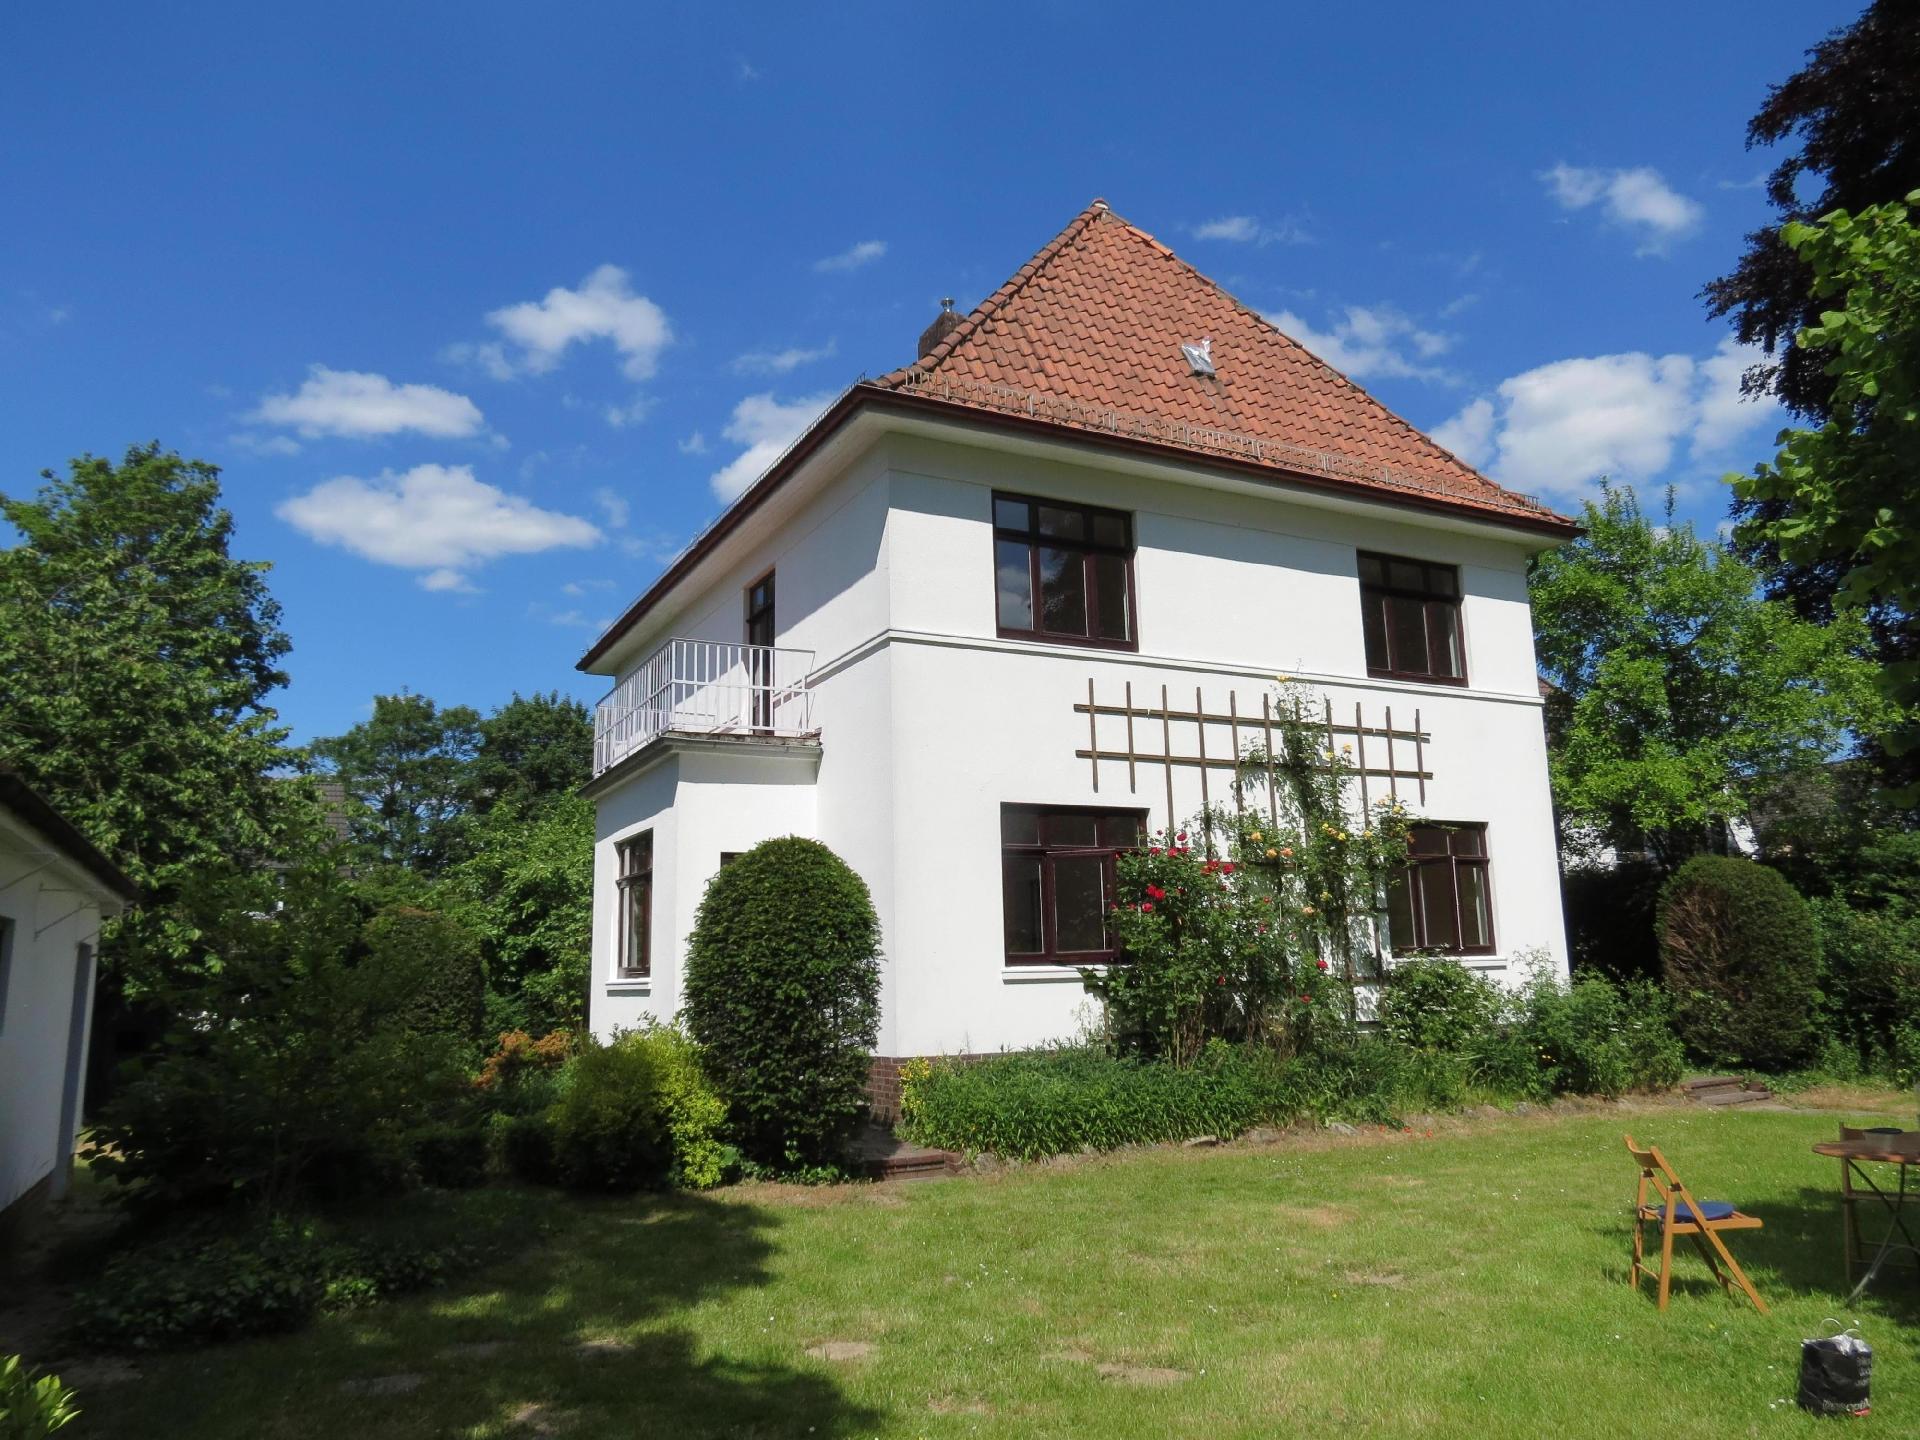 Haus der Wohnstile , Ferienhaus in Bremen-Lesum   in Deutschland